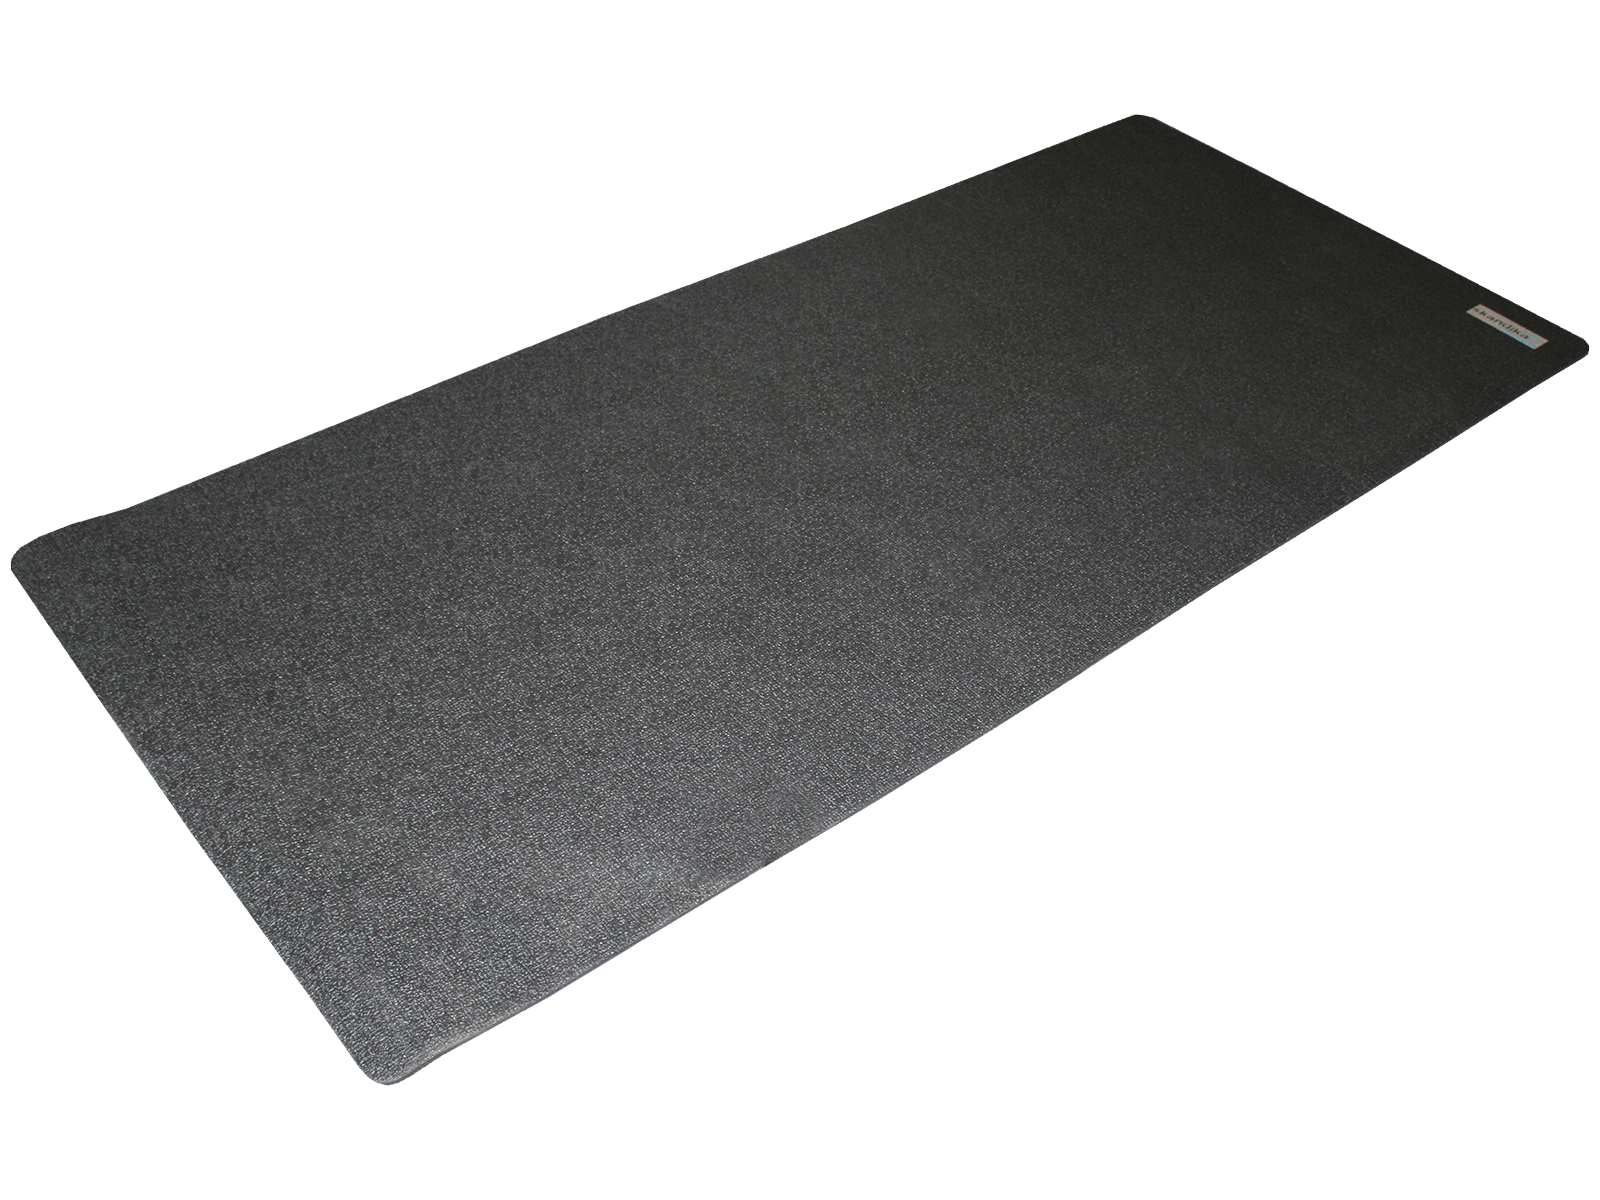 Bodenschutzmatte Unterlegmatte für Fitnessgeräte Bodenmatte  2m